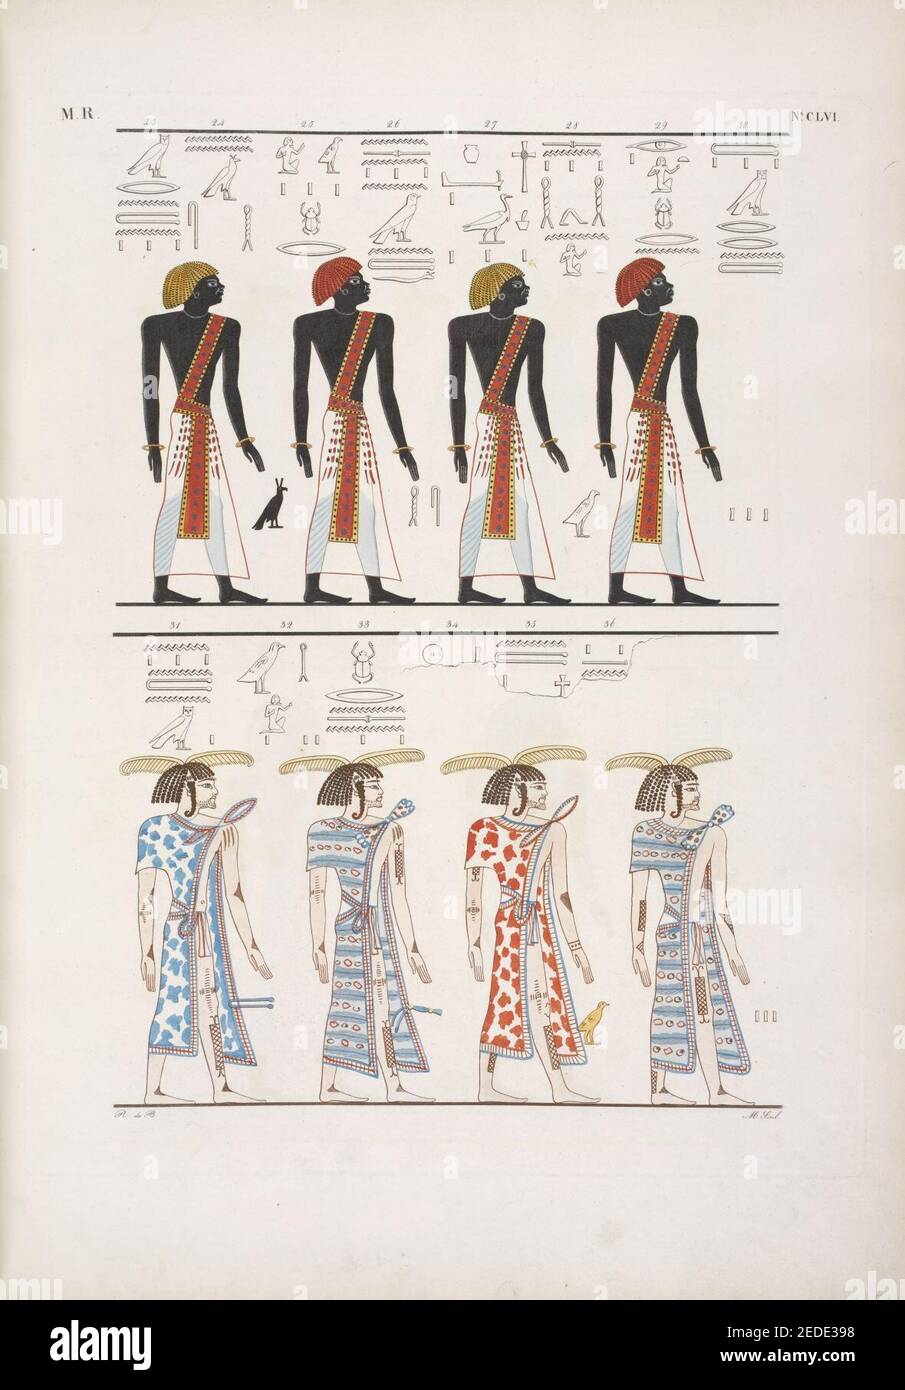 Le diverse specie di uomini noti agli Egizi, rappresentati nella tomba di Menphtah I (Seti I) I primi figurano li stessi Egiziani; e a tutti succede il dio Horus custode dell'umana stirpe Stock Photo